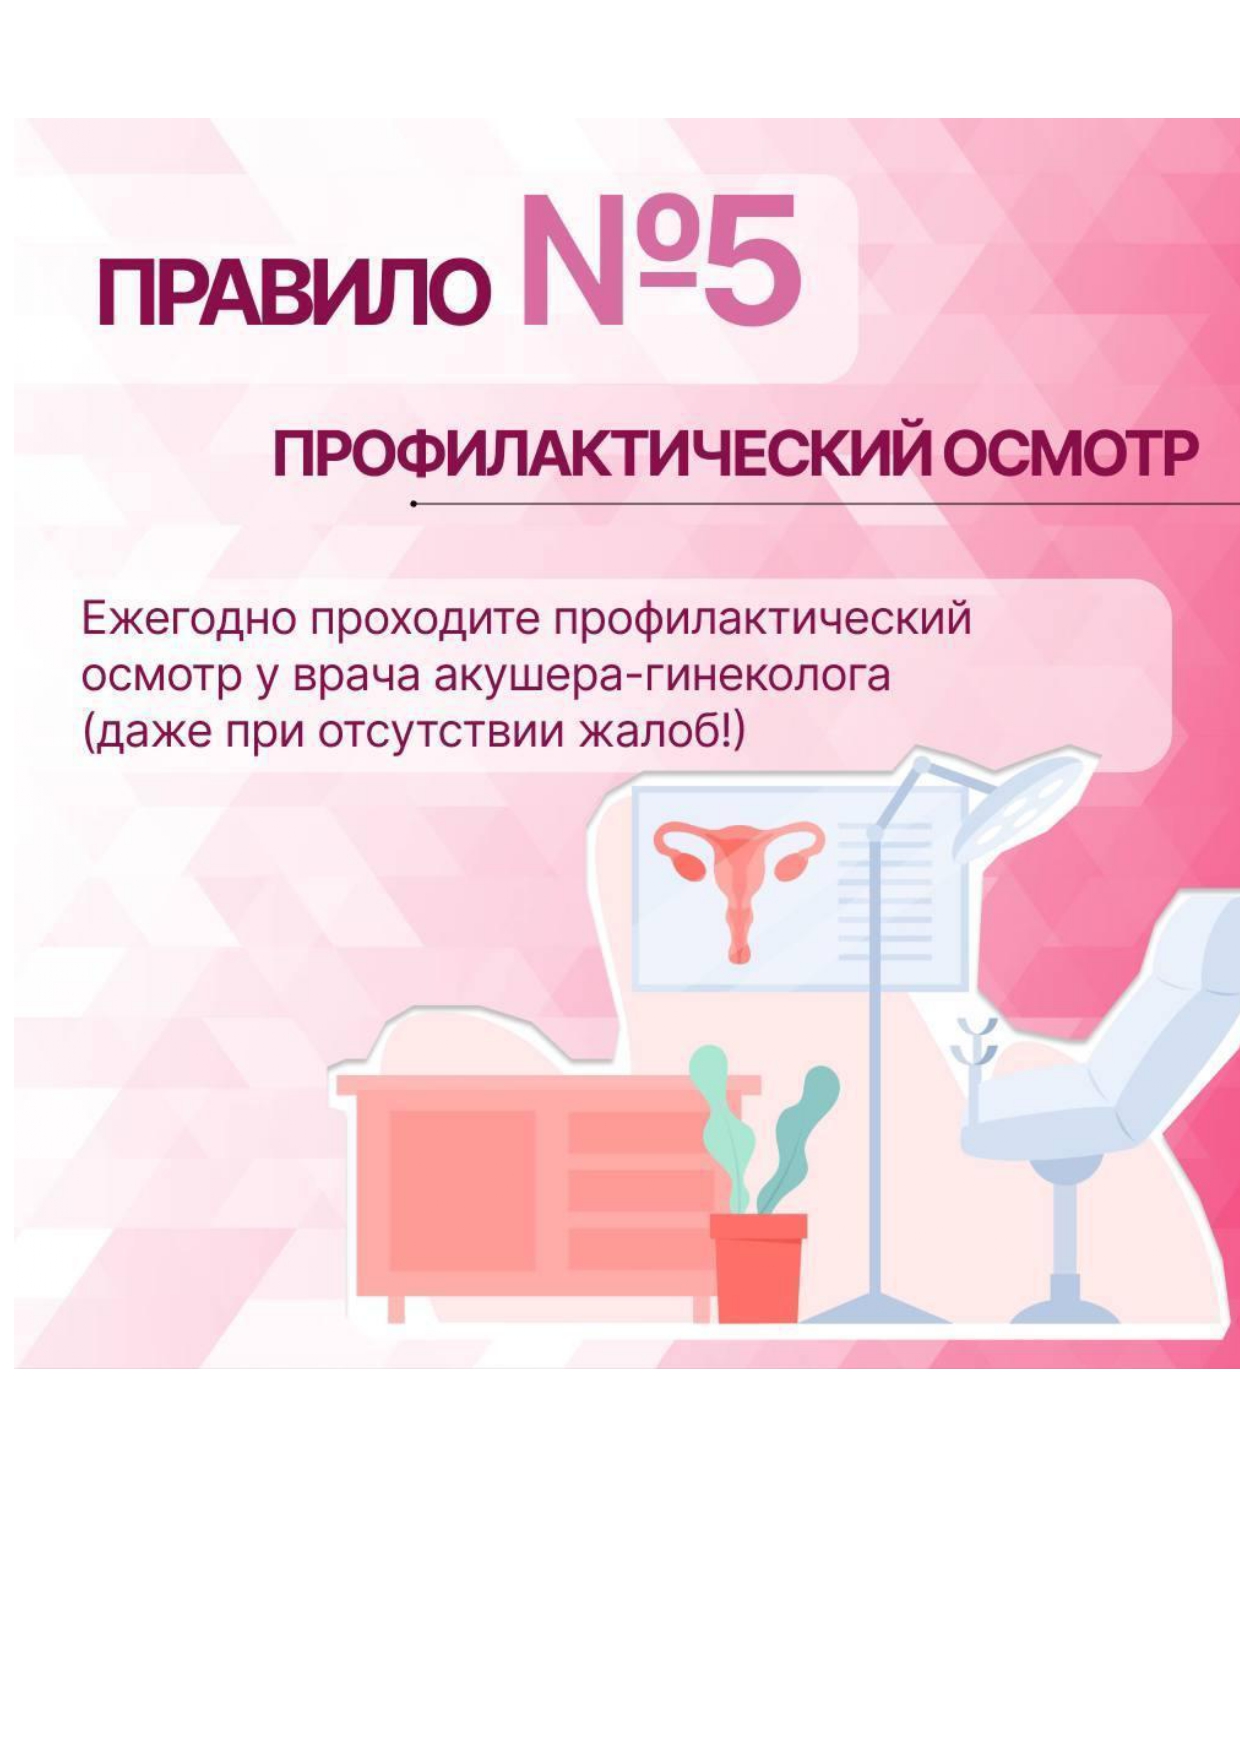 сохранение репродуктивного здоровья pages to jpg 0008